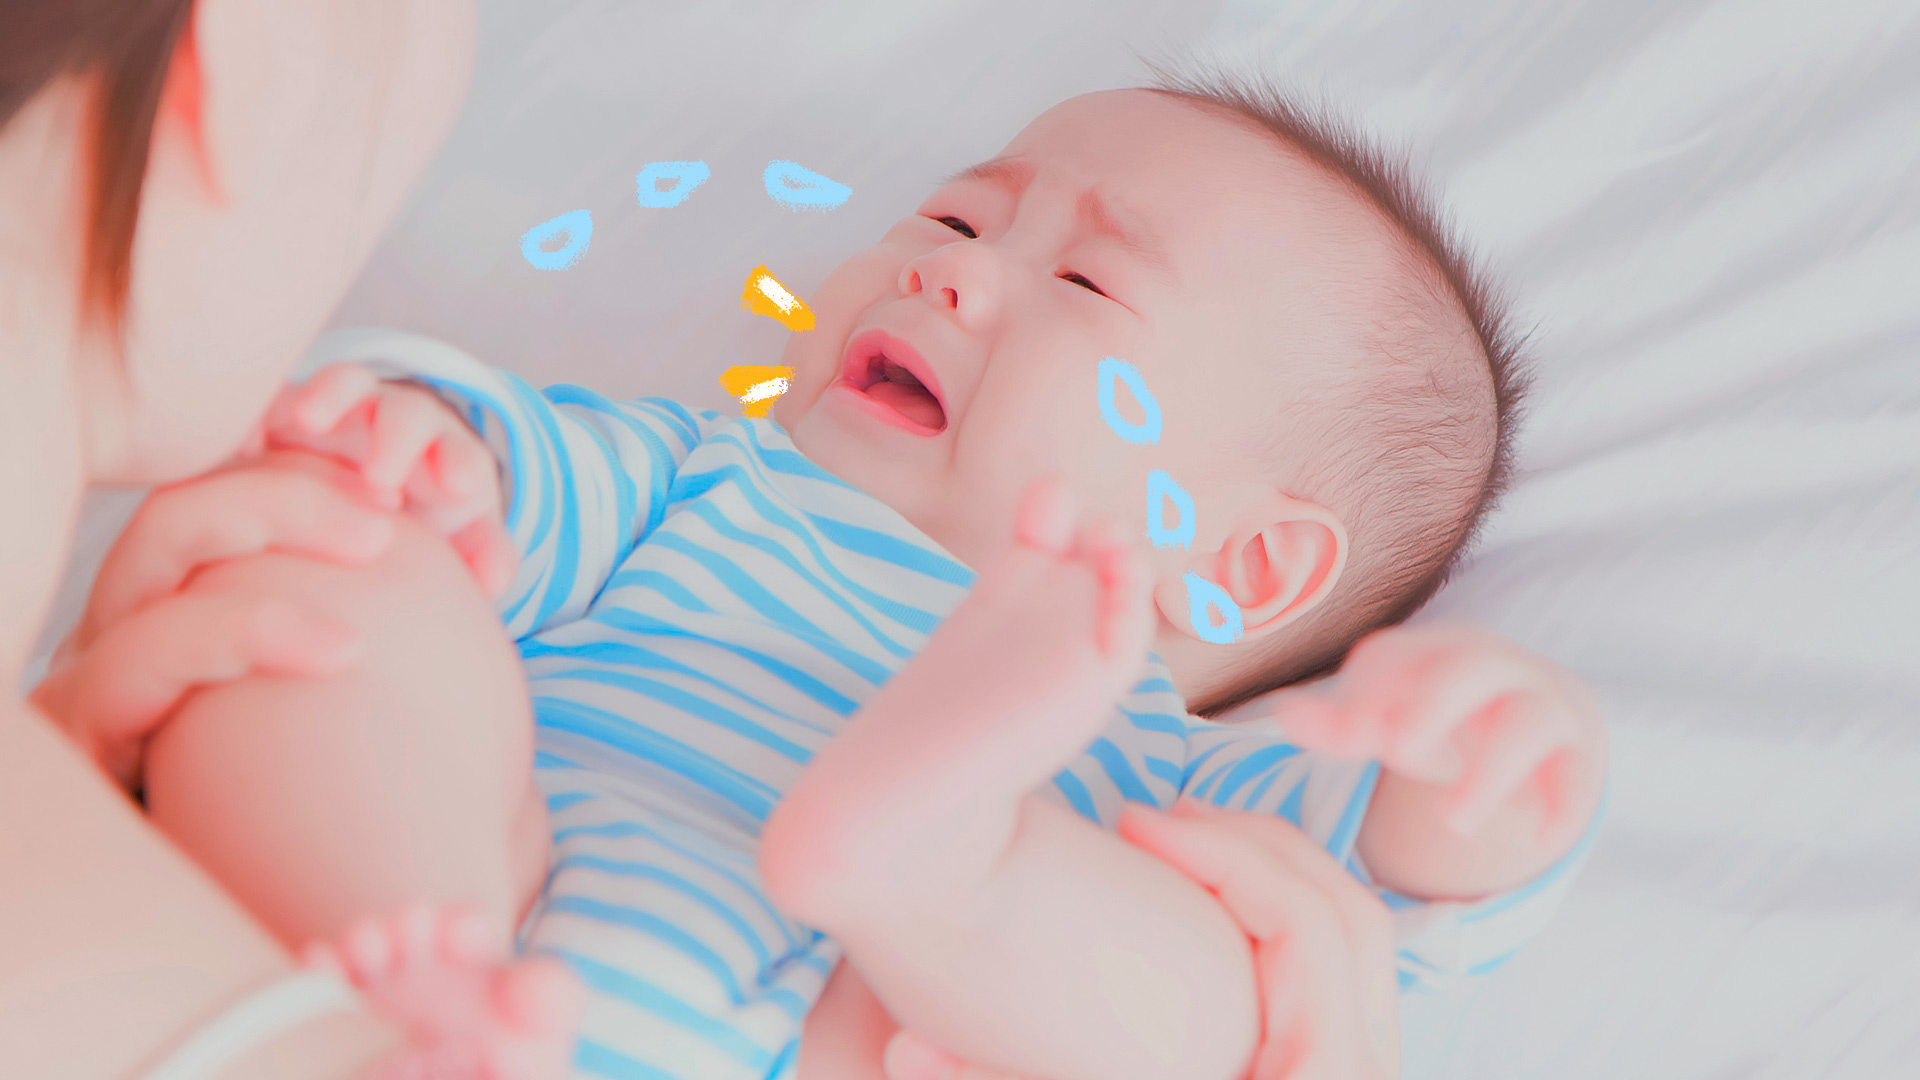 Imagem de um bebê vestido com uma roupinha azul listrada com branco está chorando